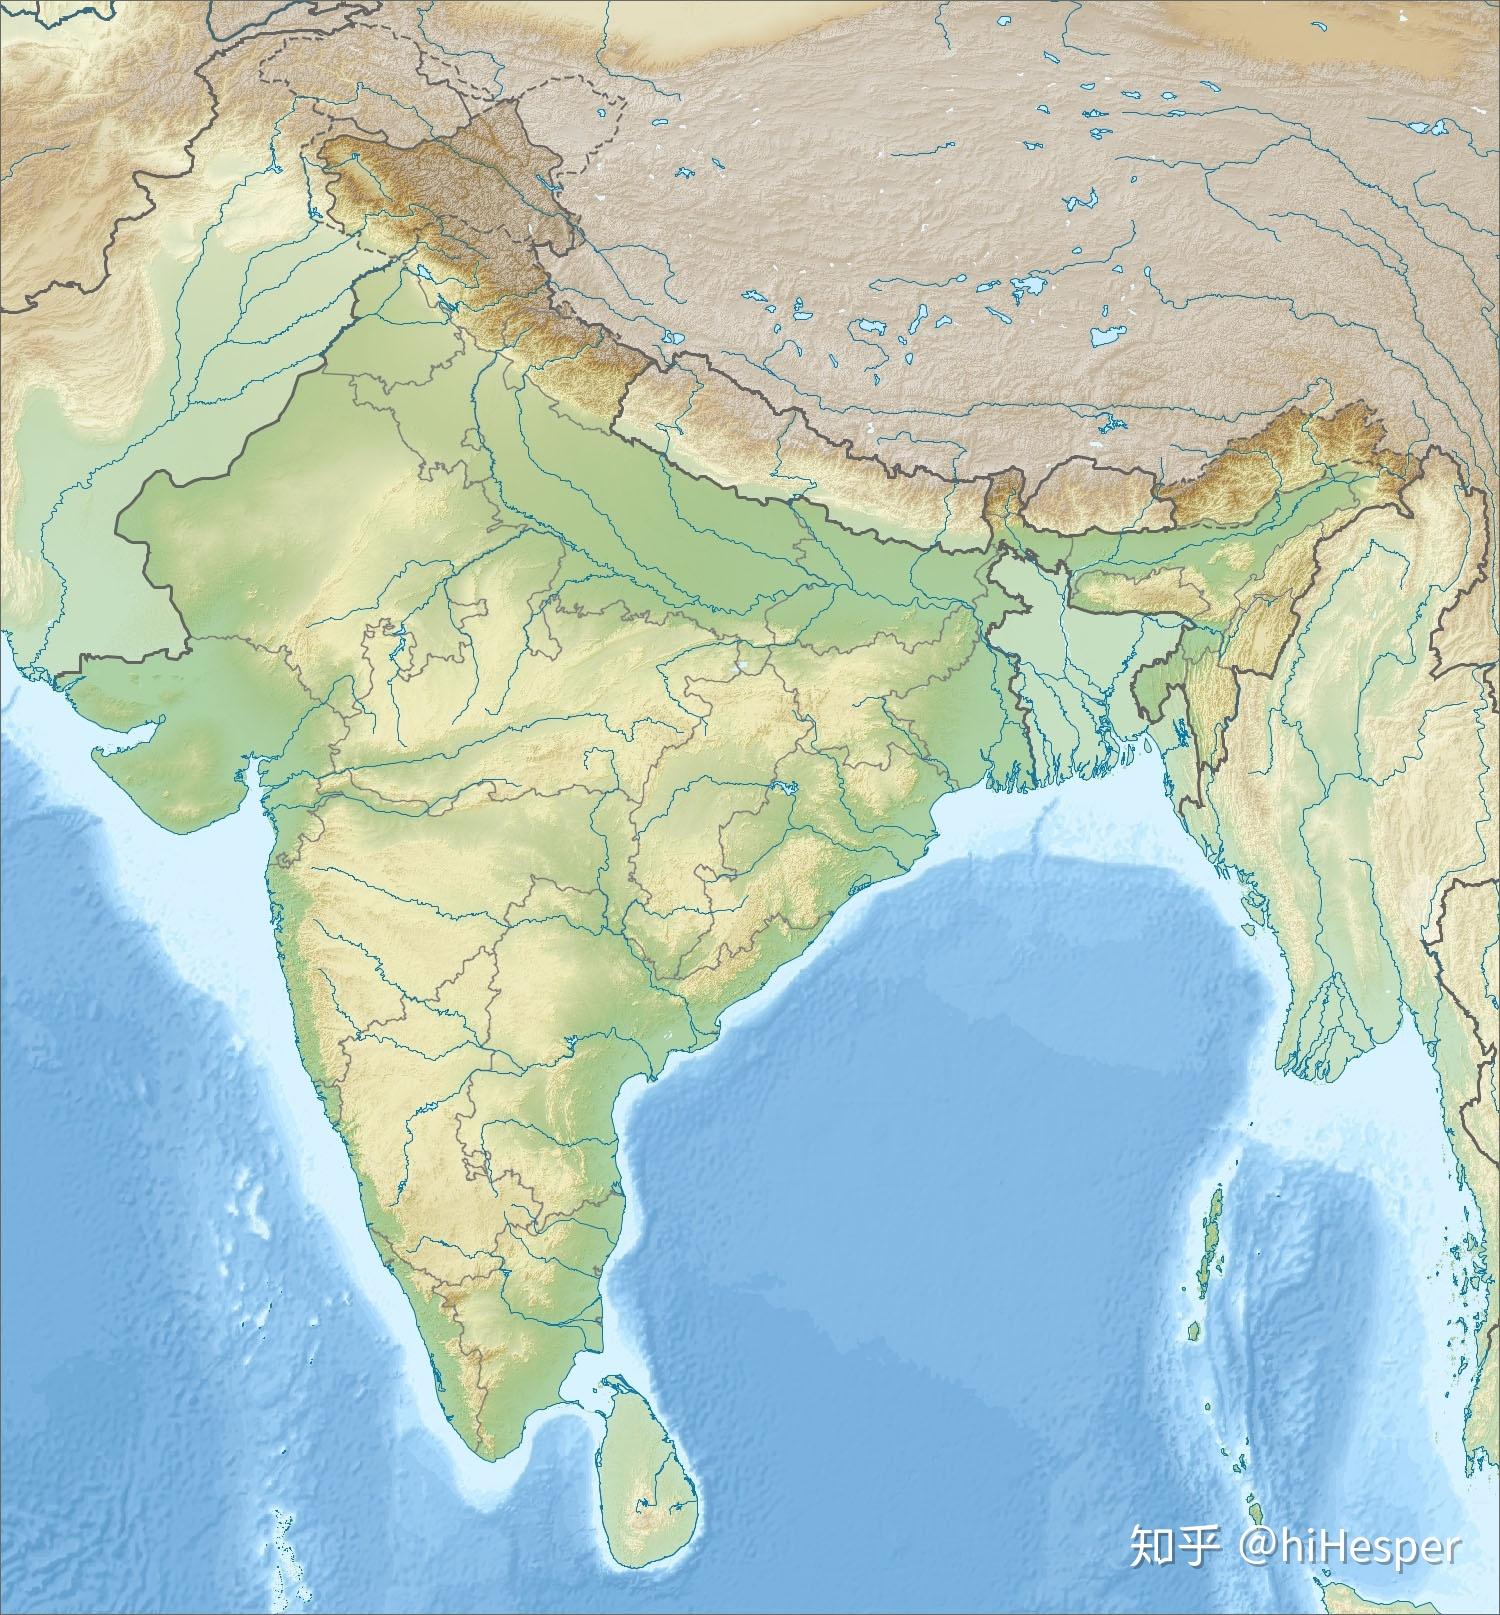 印度北部为喜马拉雅山地,中部是恒河,印度河平原,南部为德干高原